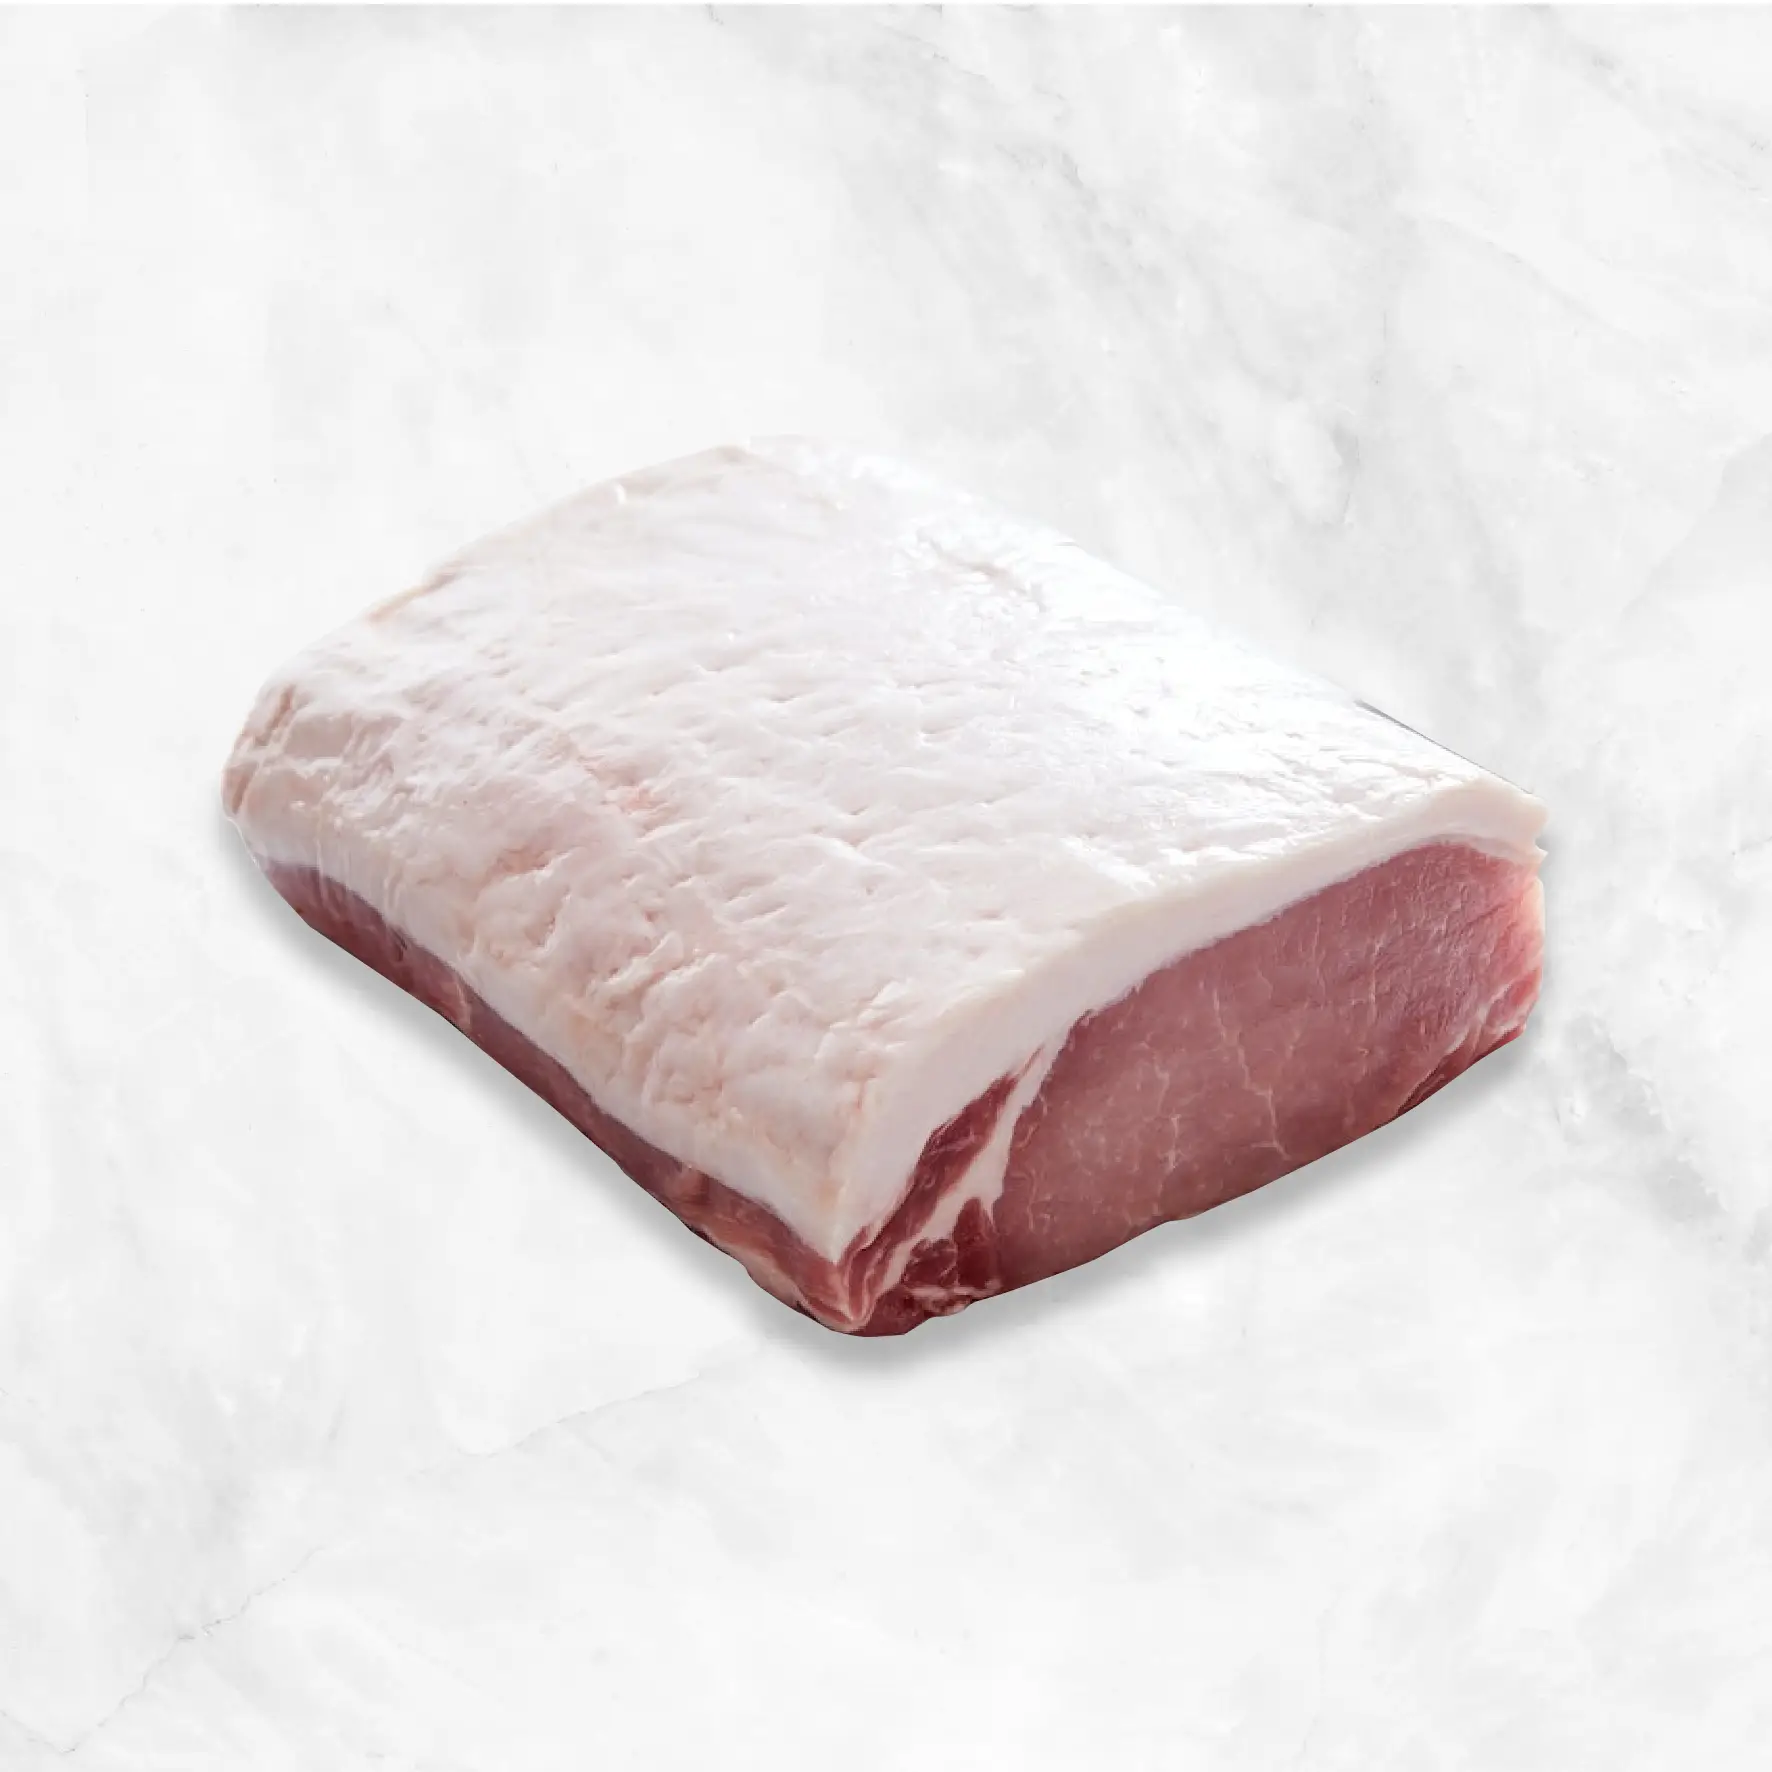 Iberico Boneless Pork Sirloin Roast